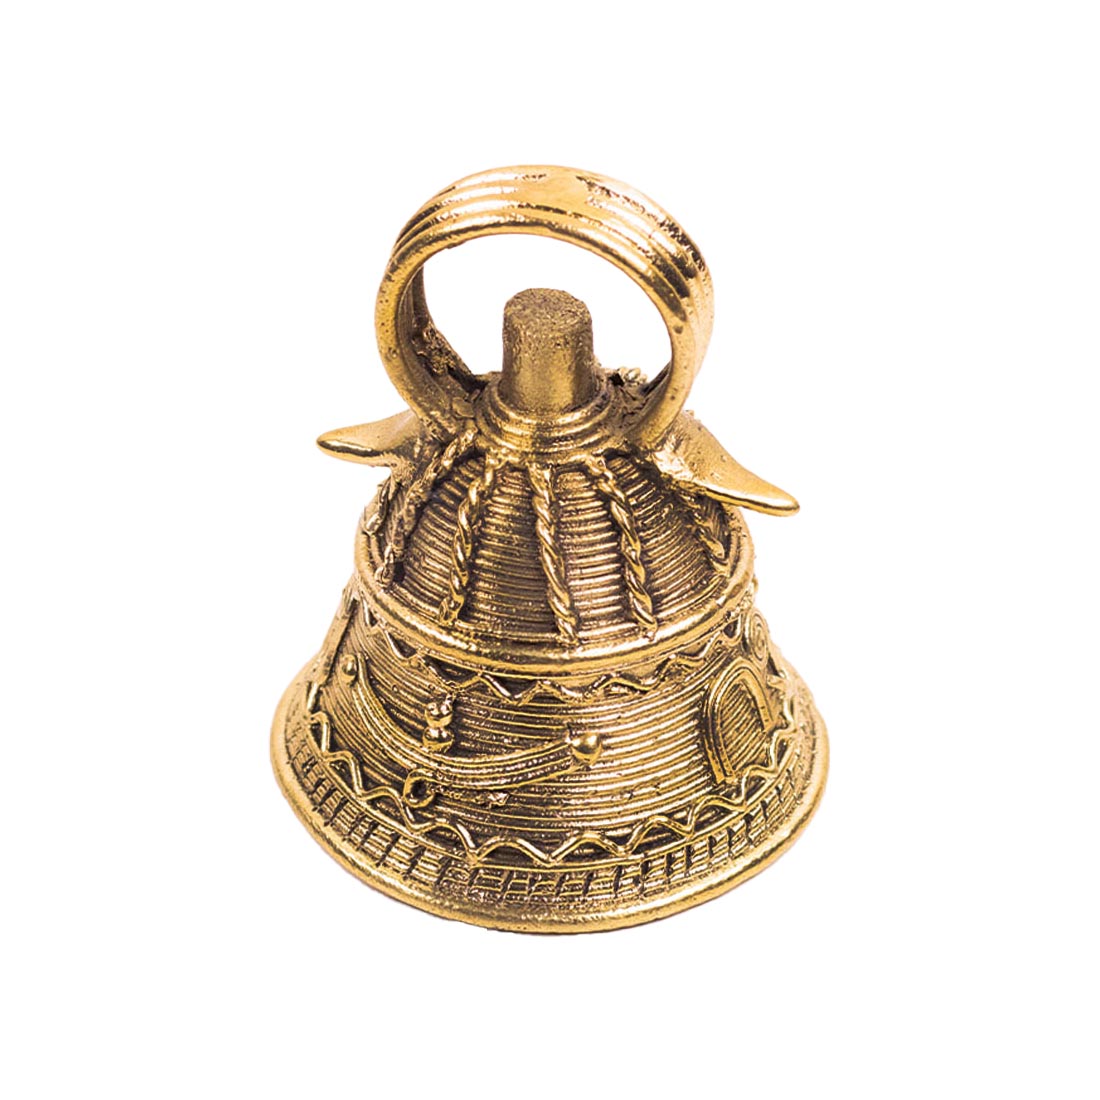 Golden Bell in Brass